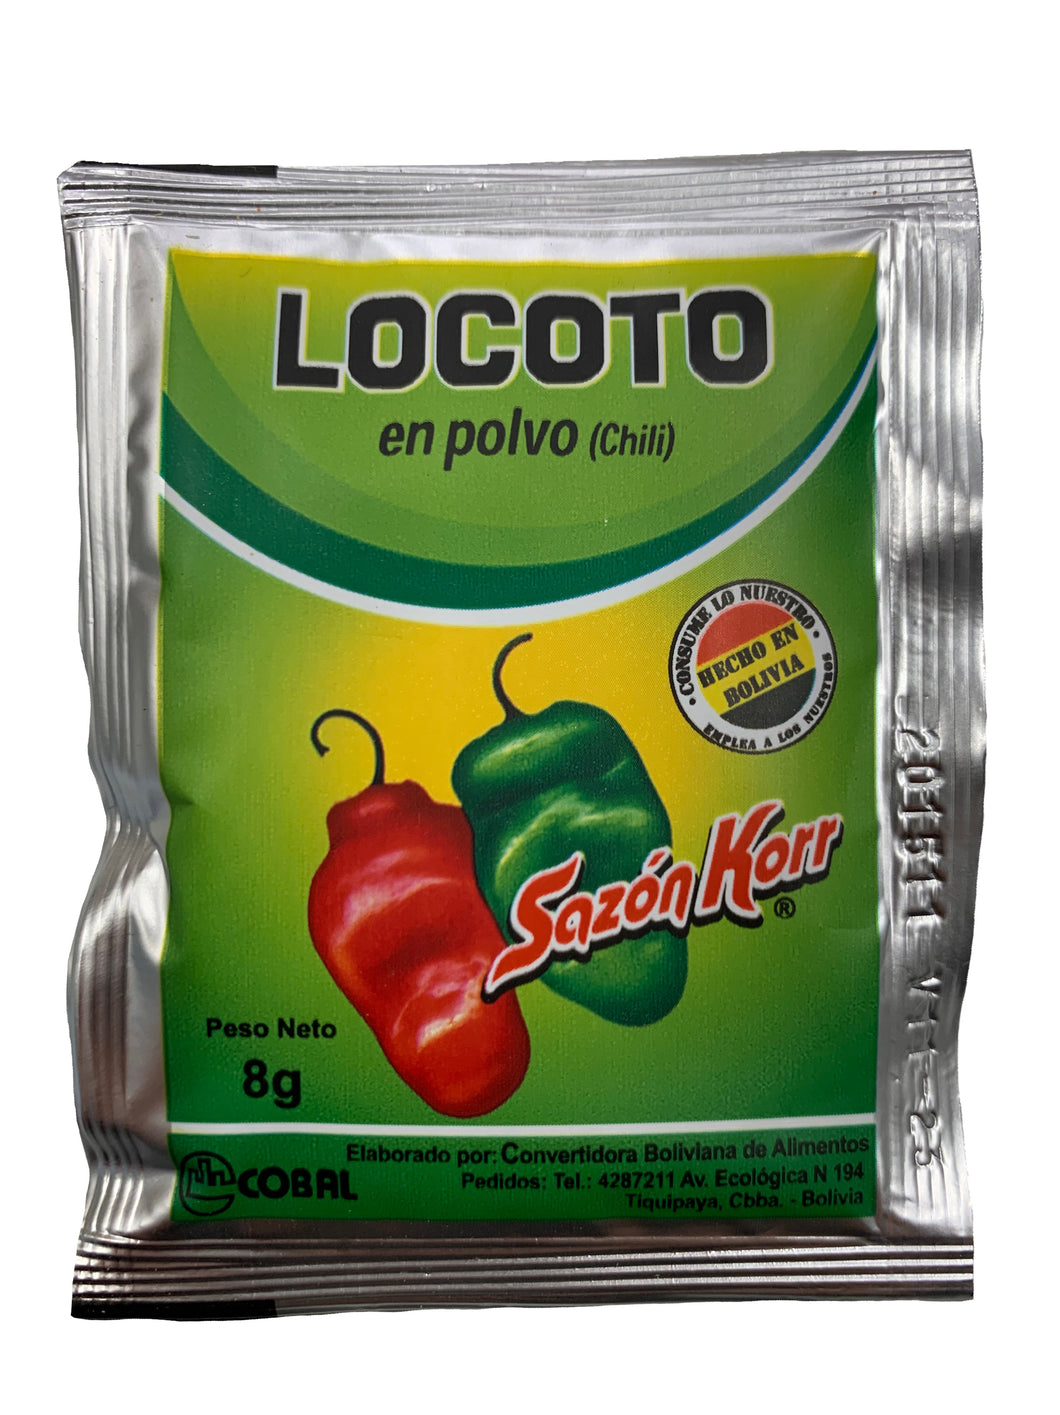 Sazon Korr Locoto Chilli Powder / Locoto En Polvo 3 x 8g